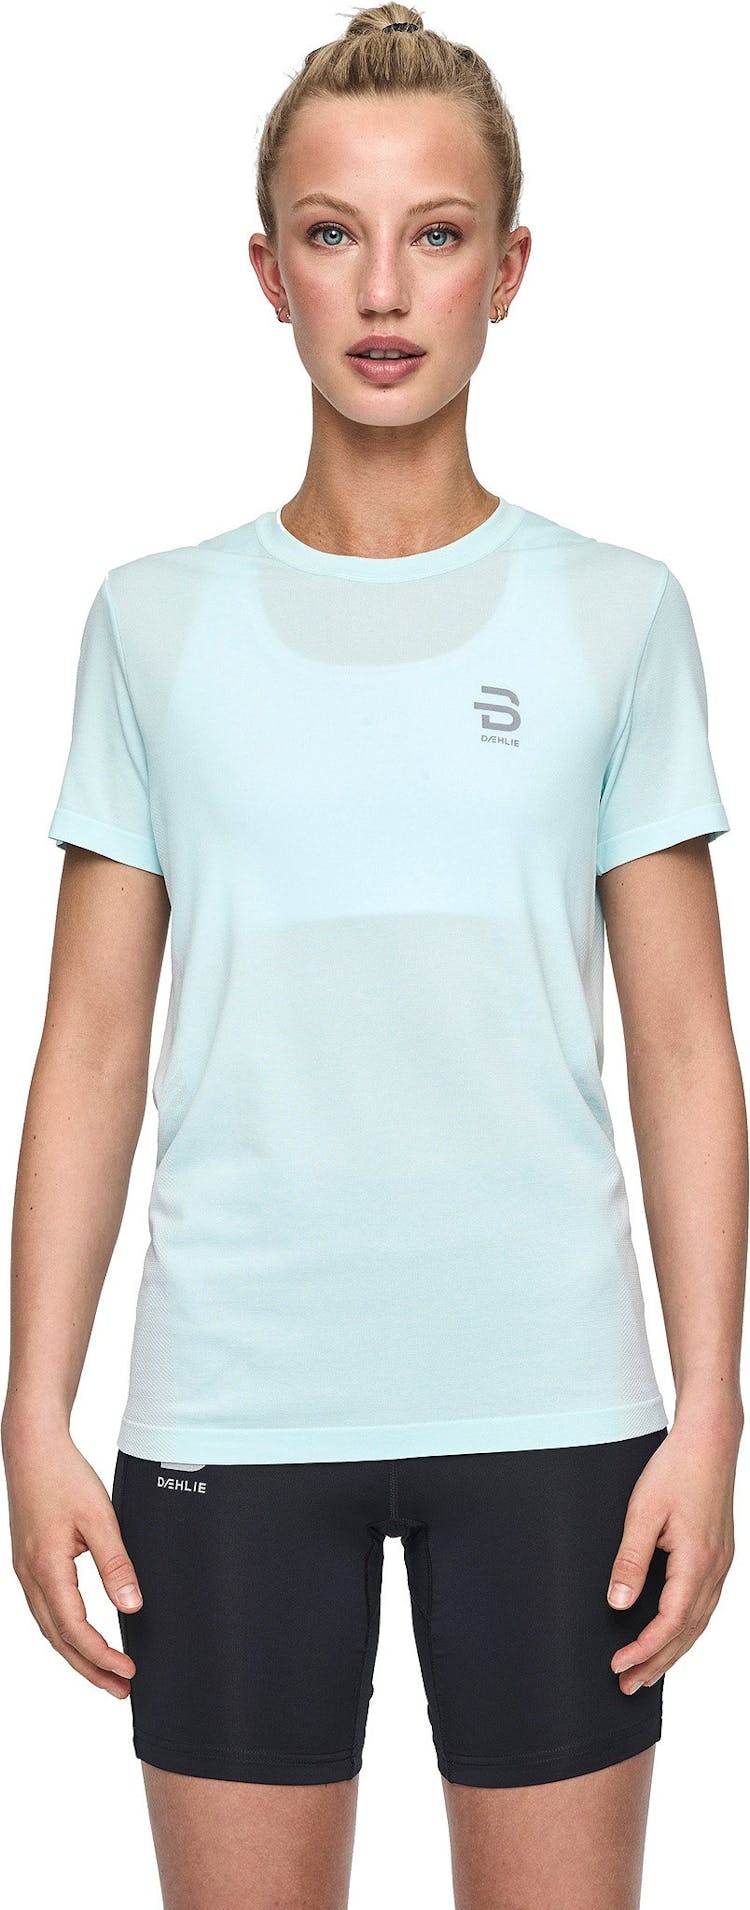 Numéro de l'image de la galerie de produits 4 pour le produit T-shirt à manches courtes Direction - Femme